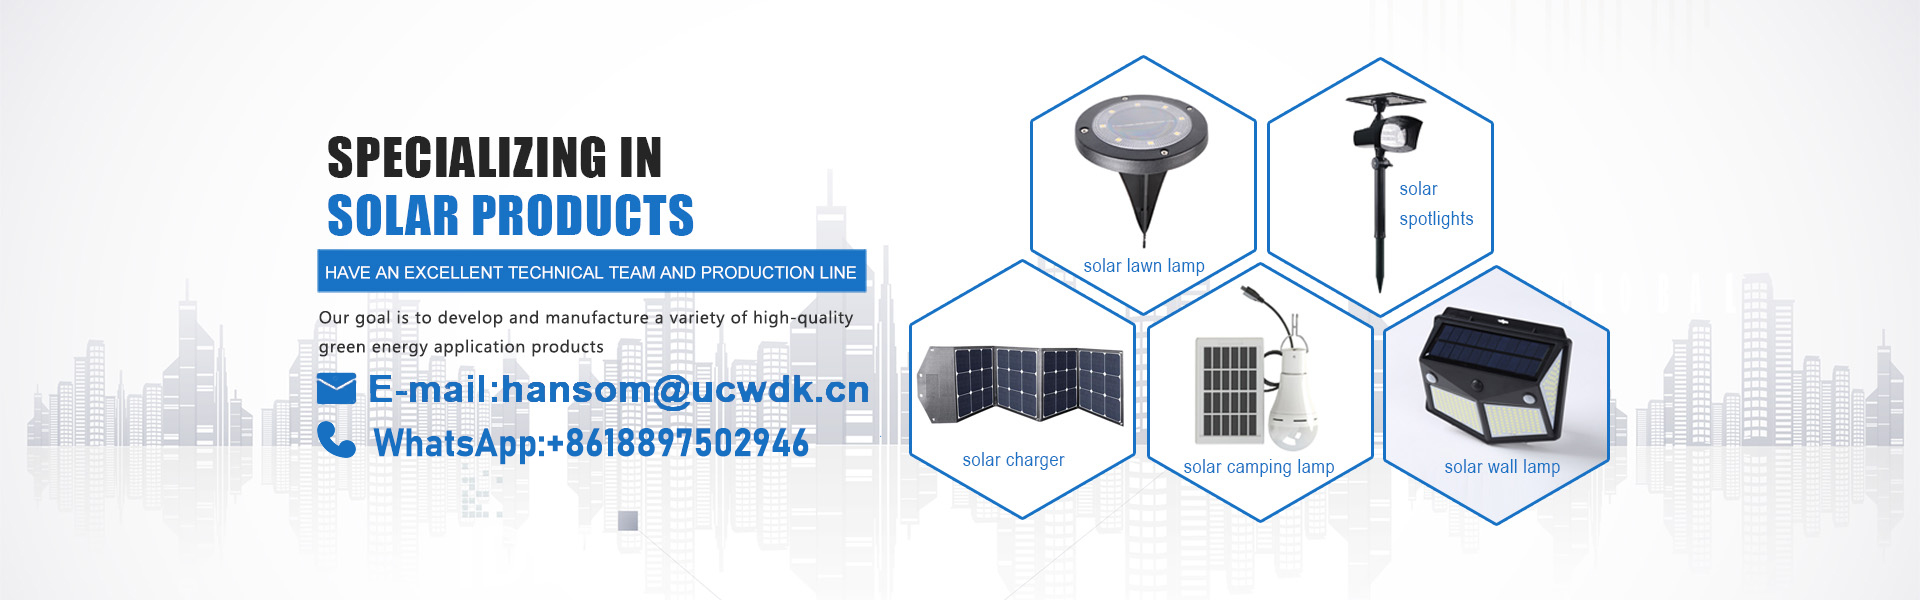 太陽充電器、太陽光、太陽電池パネル,UCWDK Solar Technology Co. Ltd.